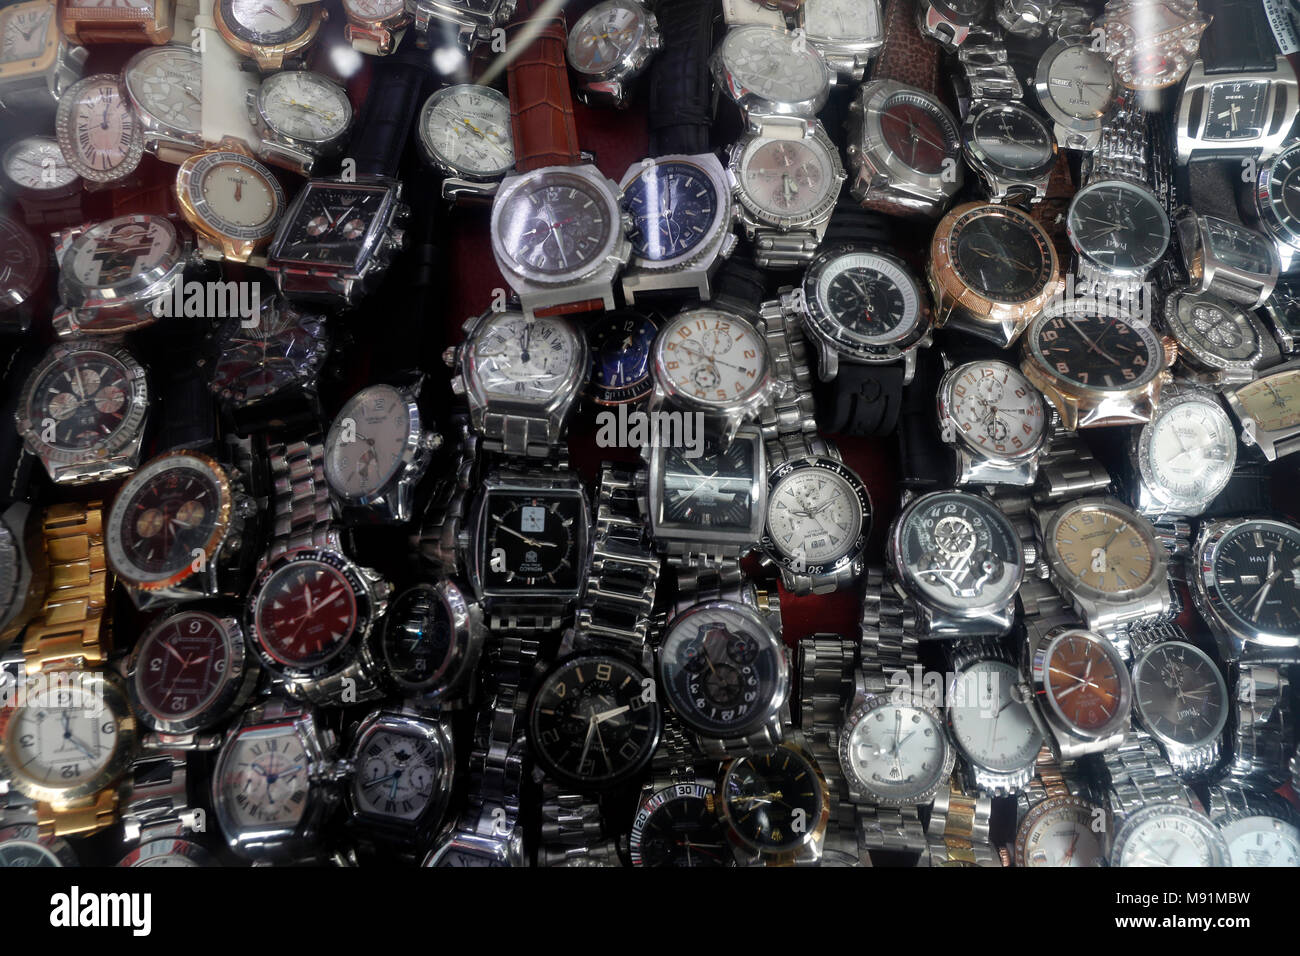 Wrist watches on sale on stall. Hanoi. Vietnam. Stock Photo